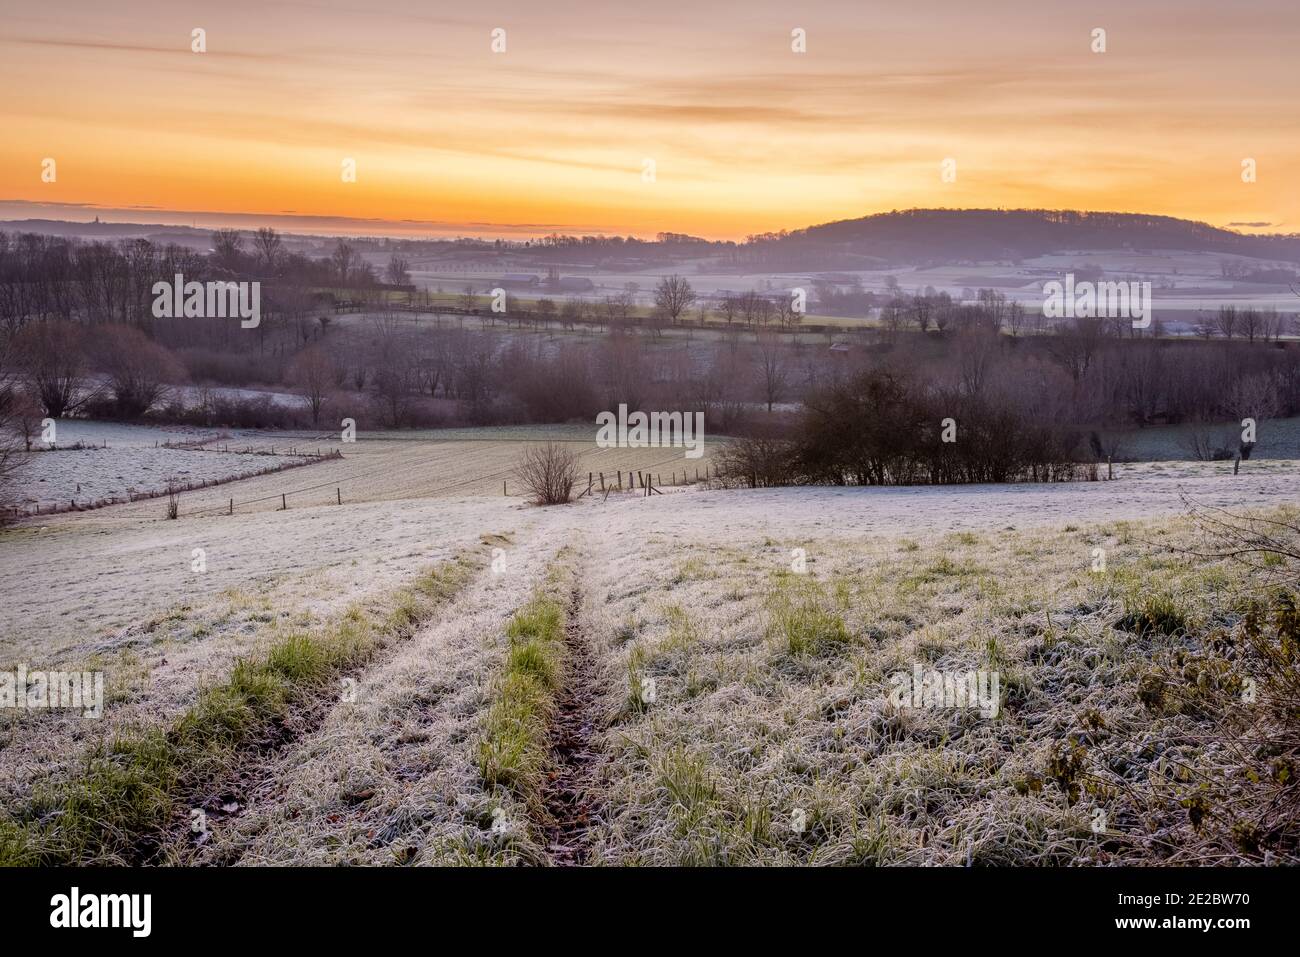 Een winterse ochtend in het vlaamse Heuvelland met zicht op de kemmelberg.A winter morning in the Heuvelland with a view of the Kemmelberg. Stock Photo